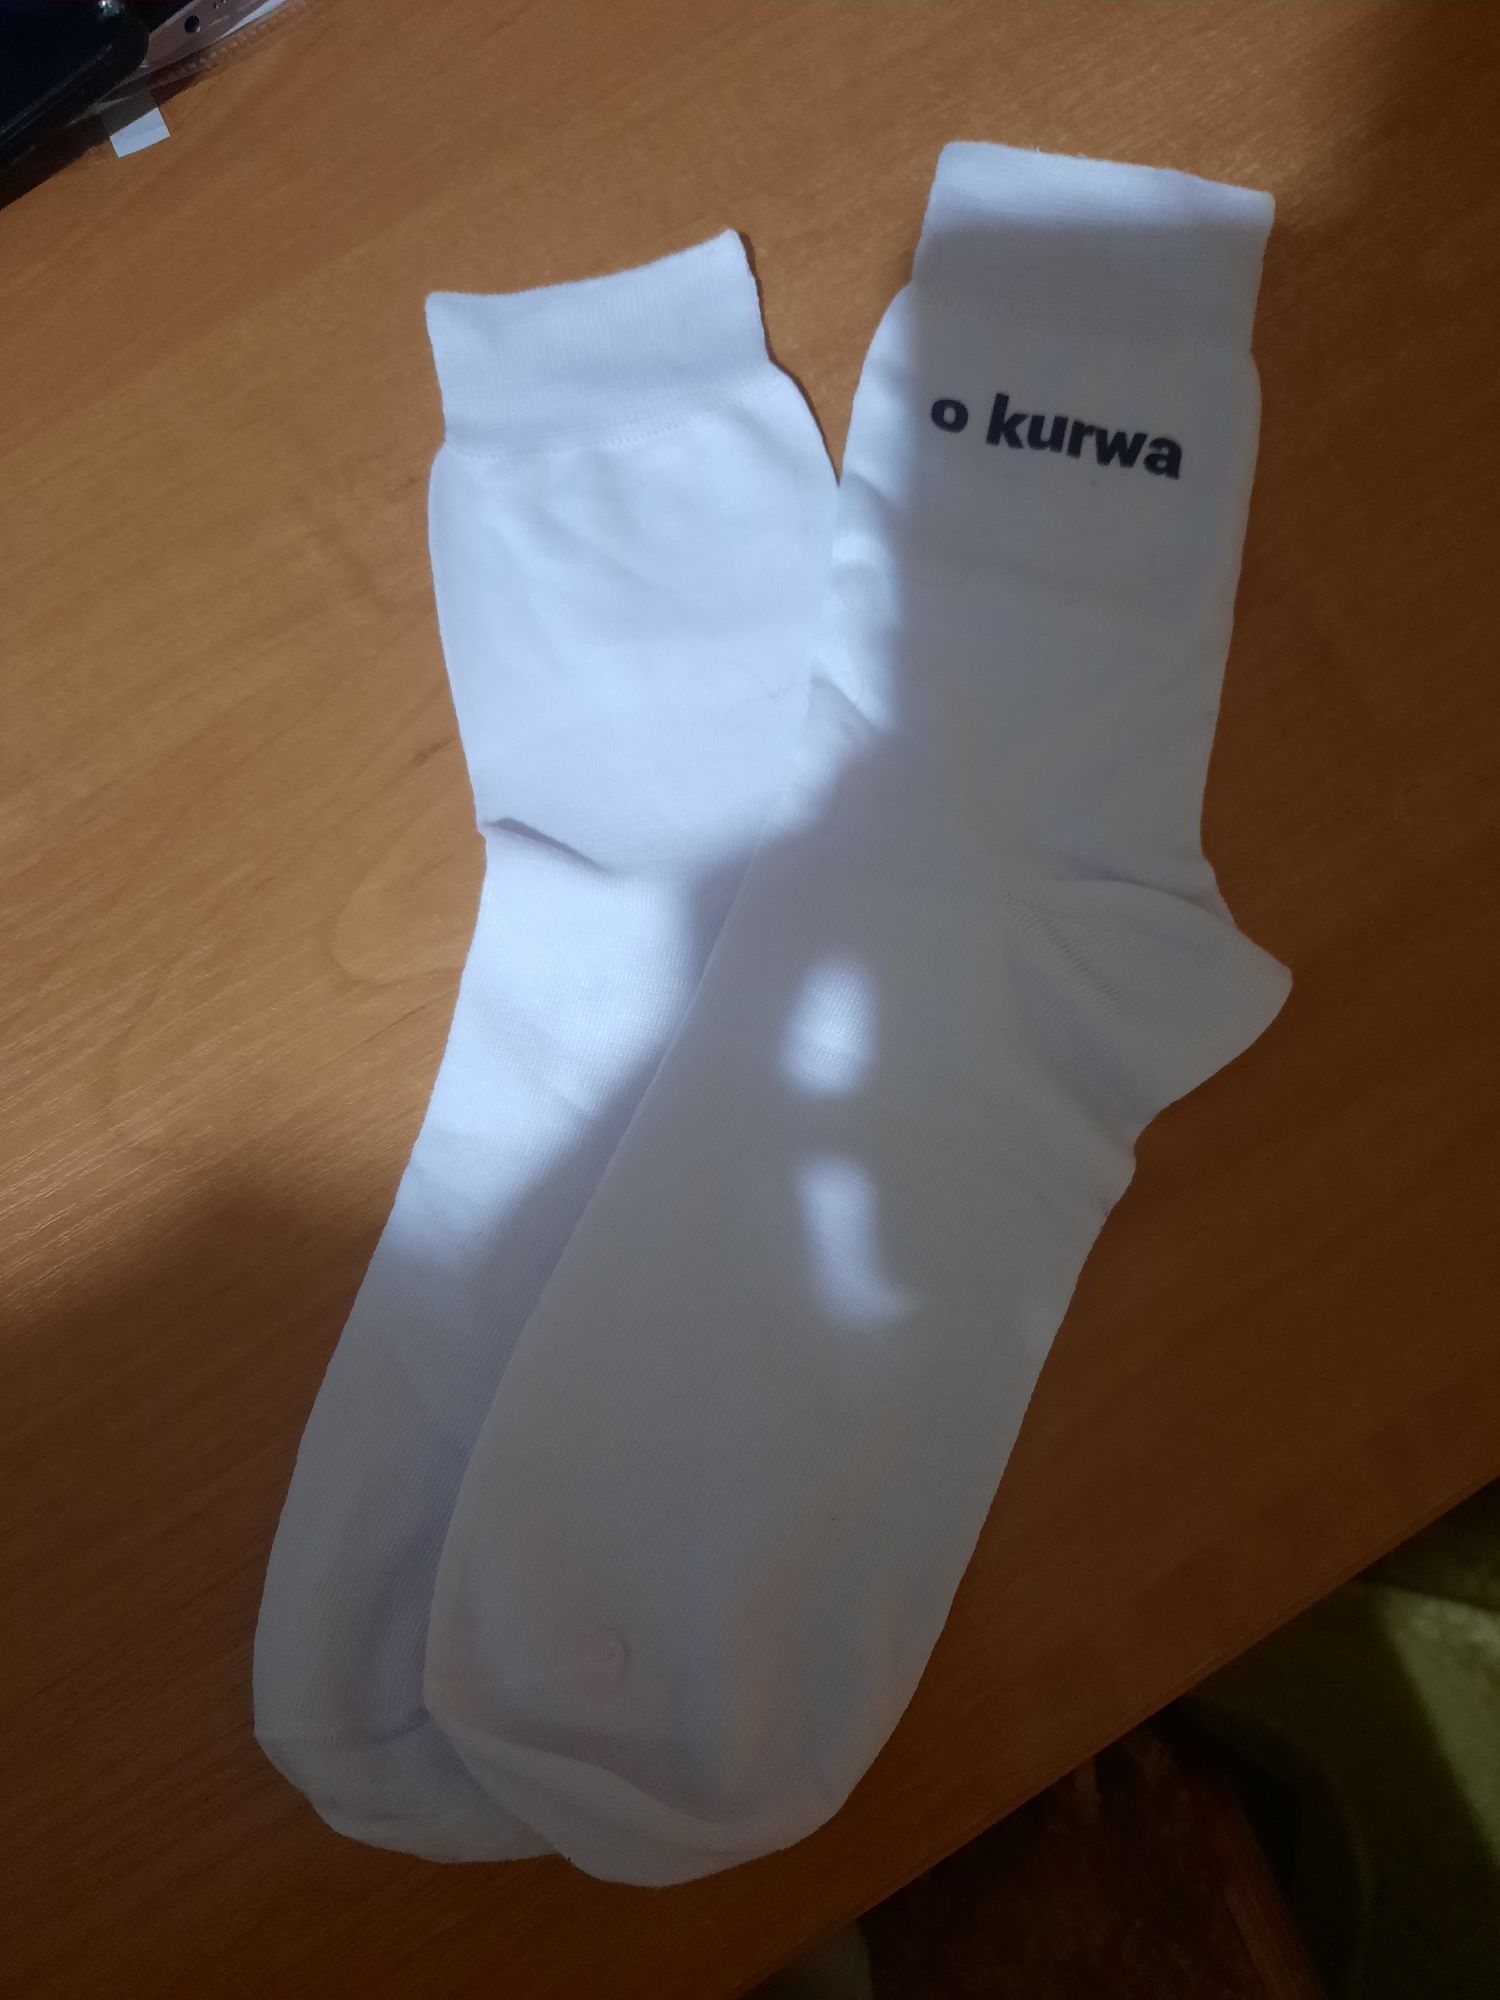 Сувенір носочки з польським надписом "o kurwa, ja pierdolę"